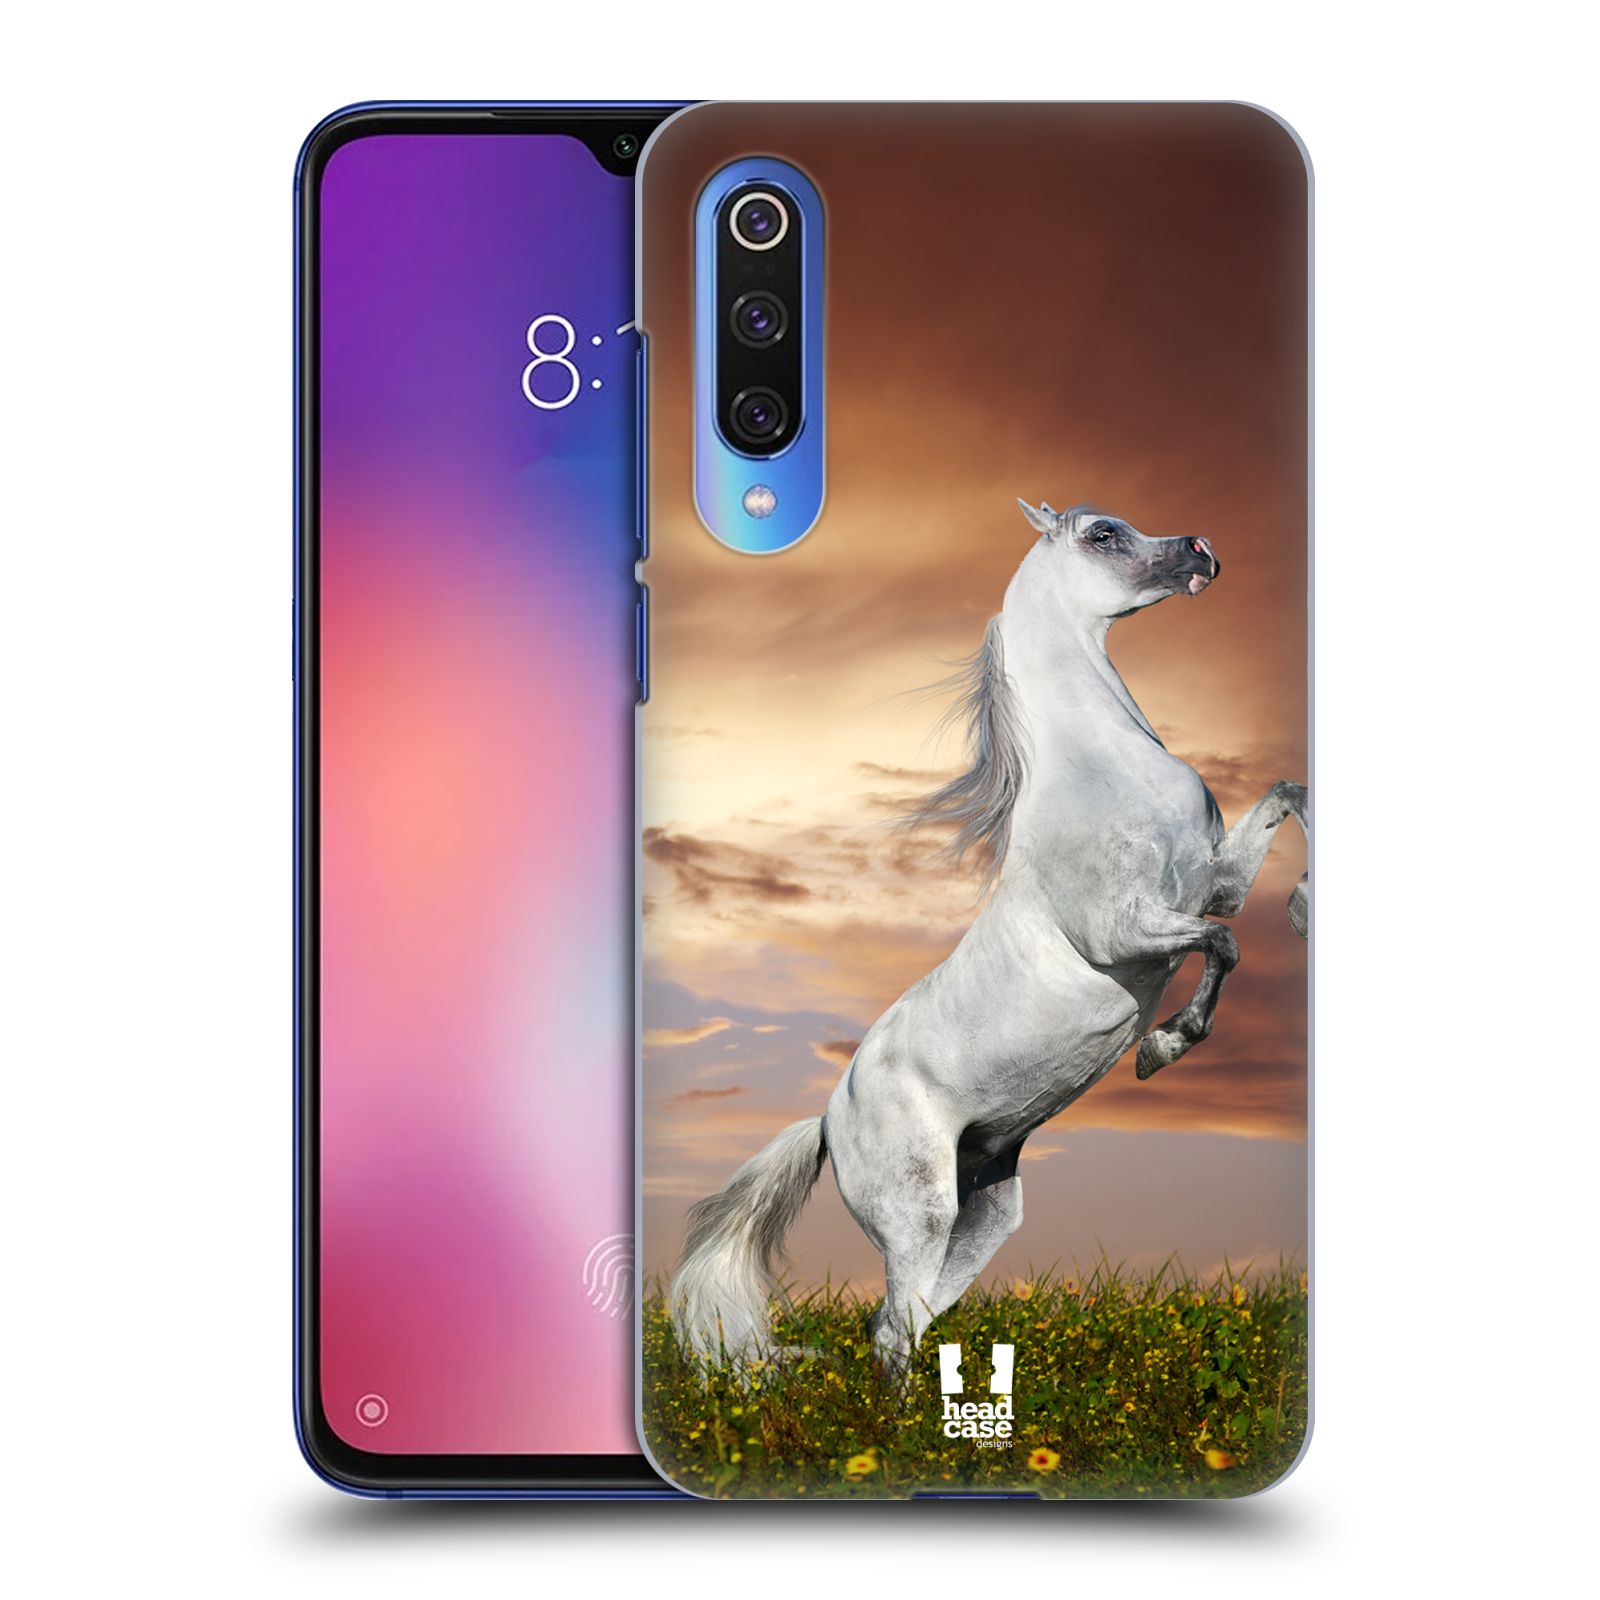 Zadní obal pro mobil Xiaomi Mi 9 SE - HEAD CASE - Svět zvířat divoký kůň